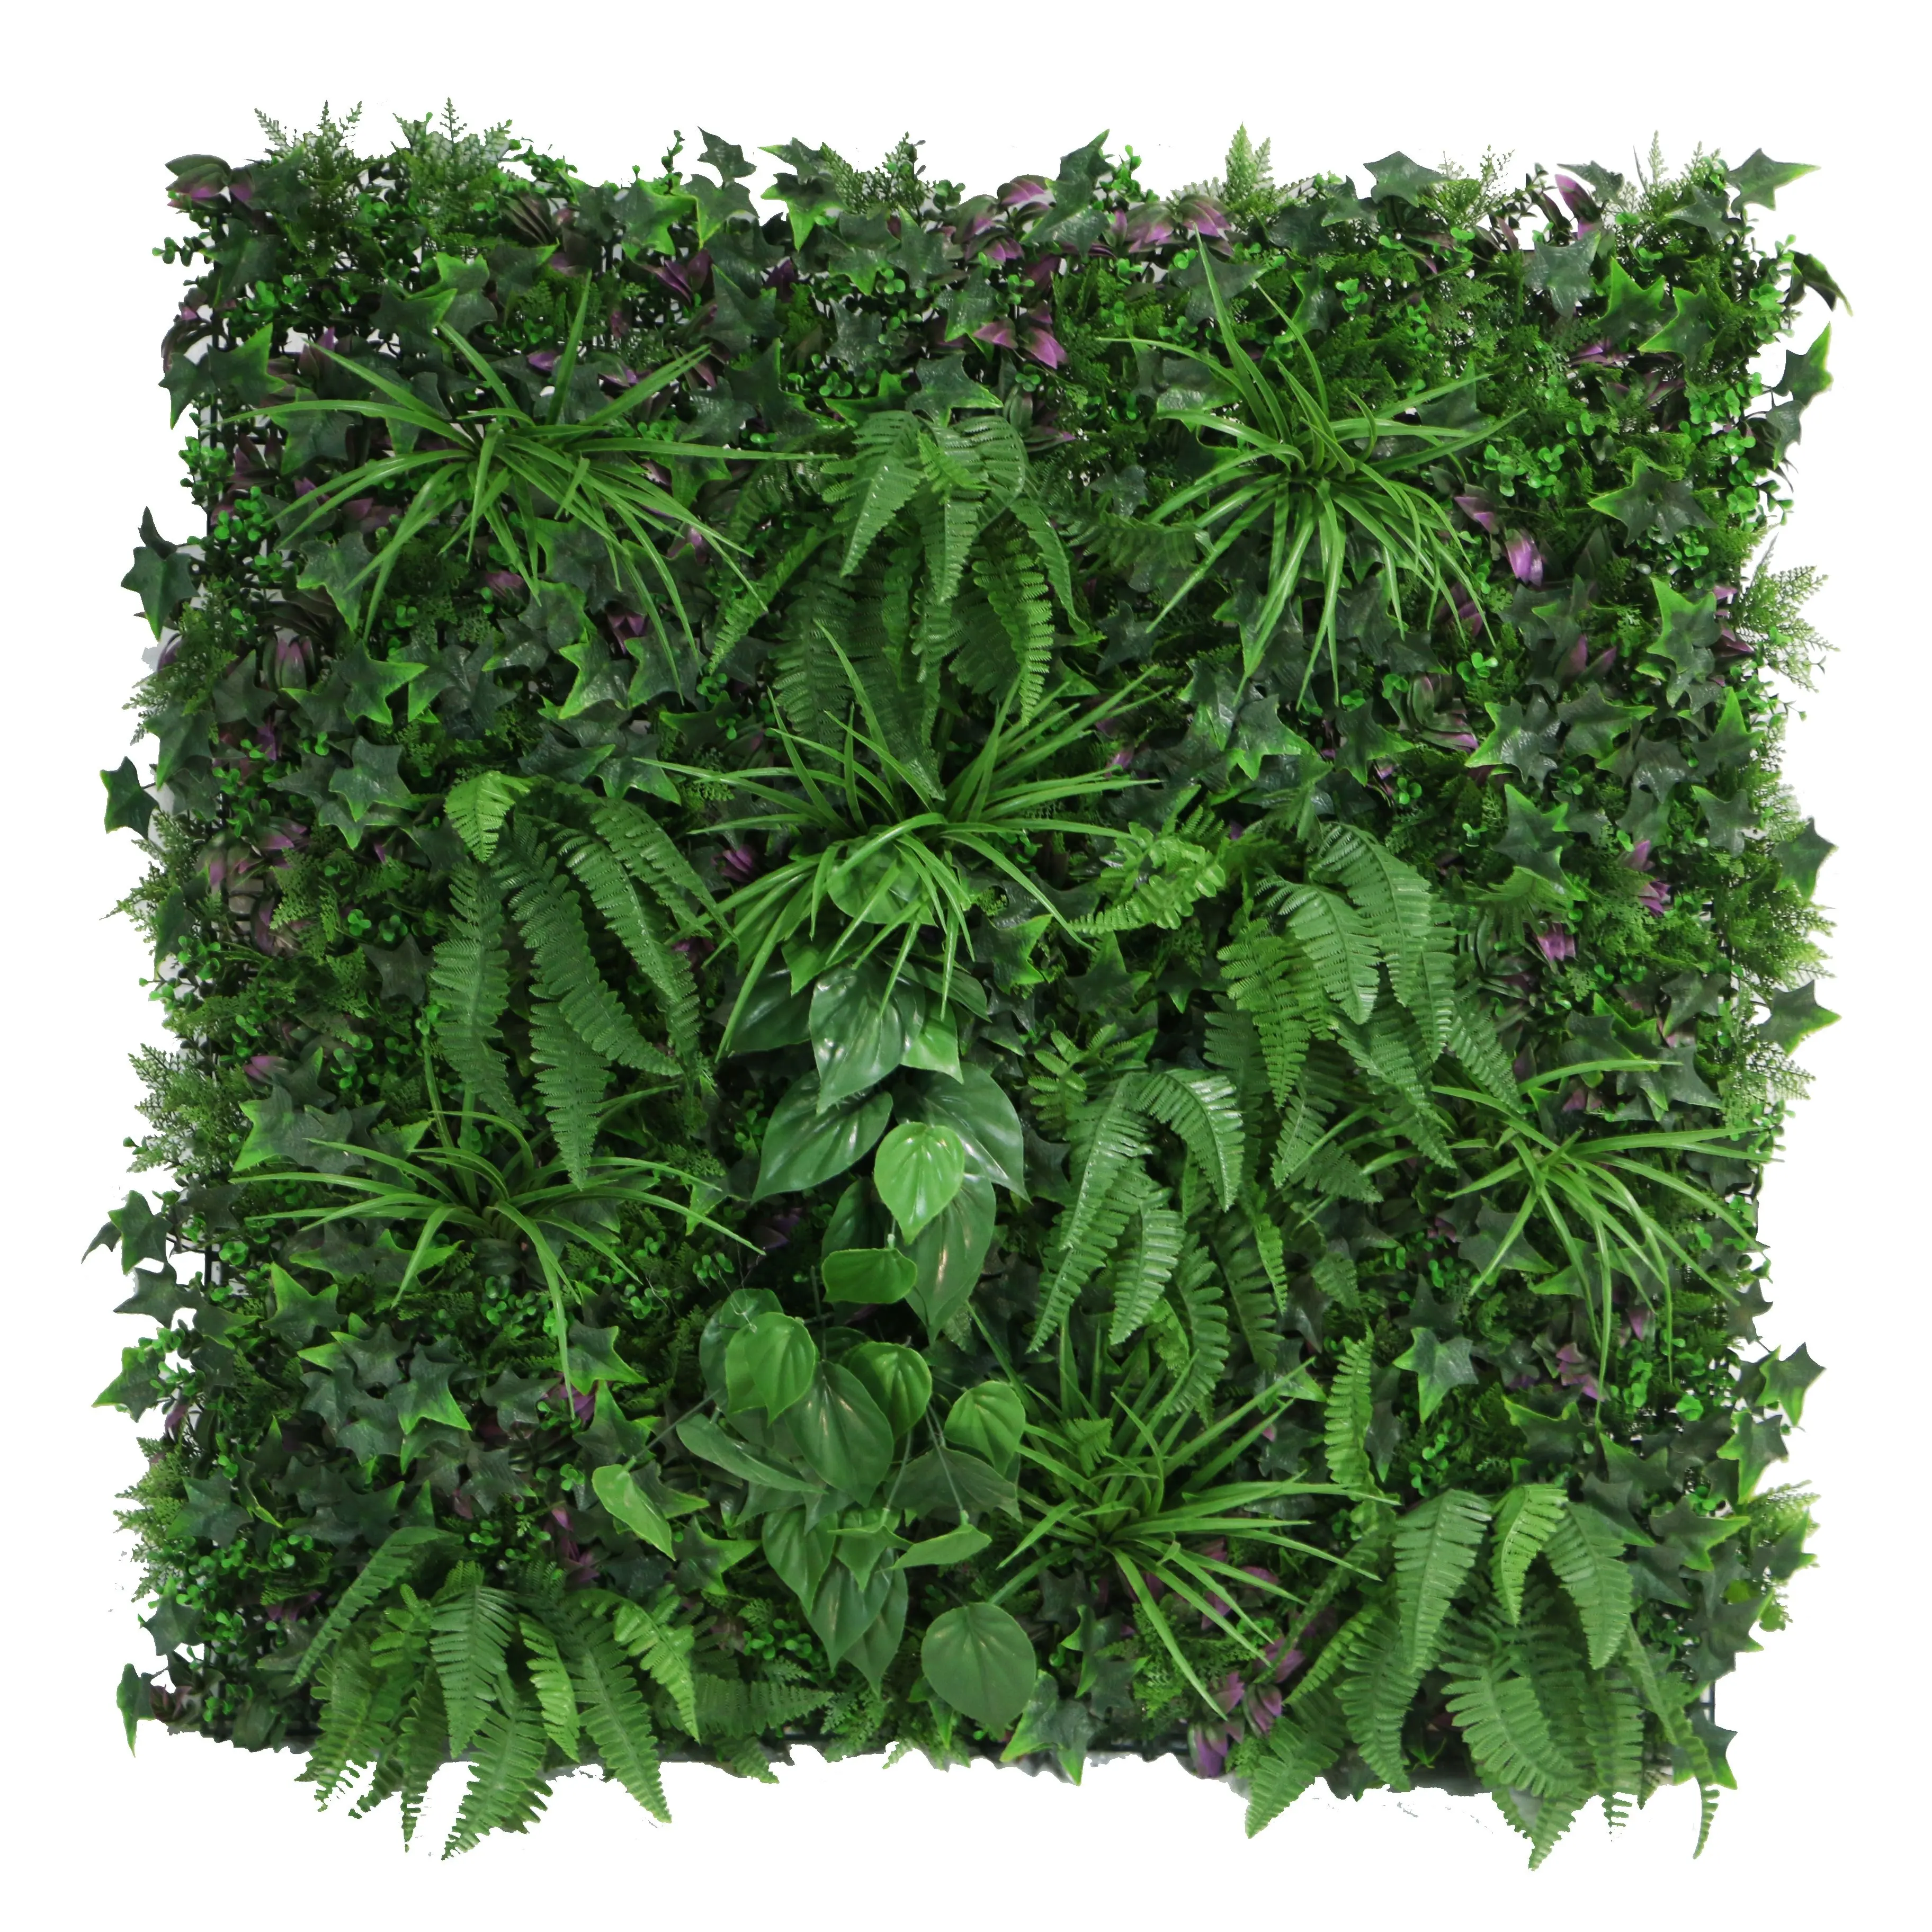 الاصطناعي جدار النبات الاصطناعي الجدار الأخضر العمودي حديقة زهرة غلاية/الرش المستخدمة مع زهرة/النباتات الخضراء البلاستيكية PE